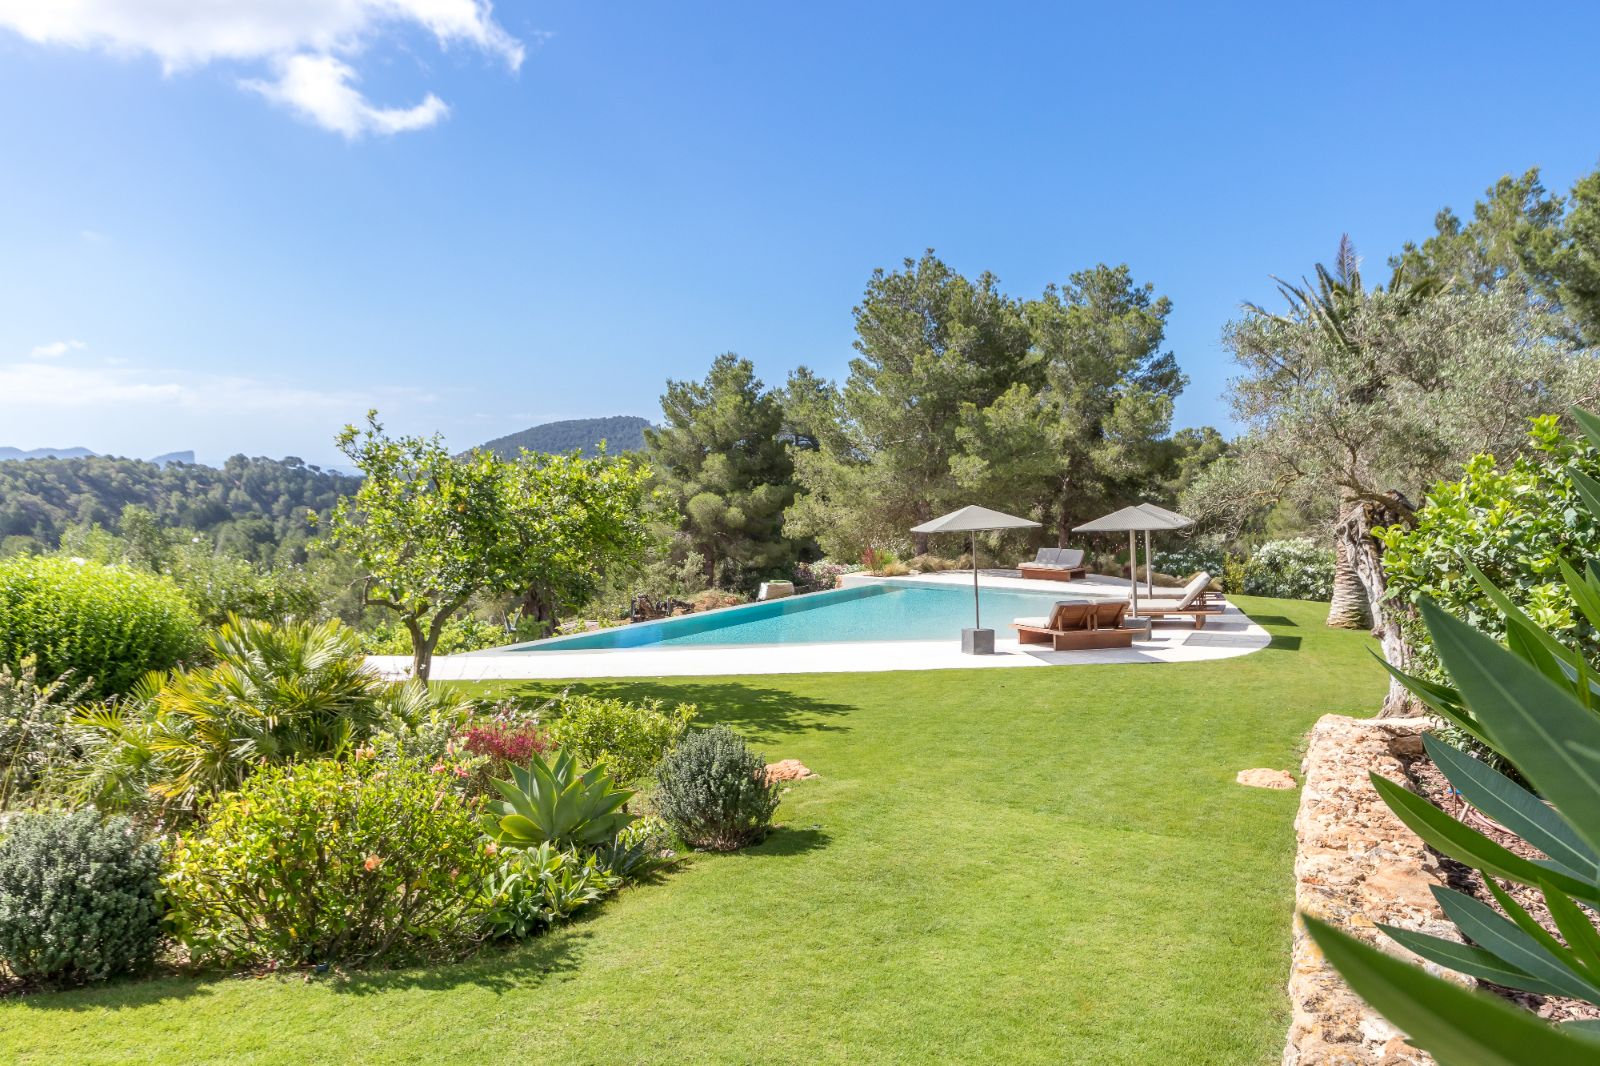 Garden and Pool at Can Bonita in Ibiza